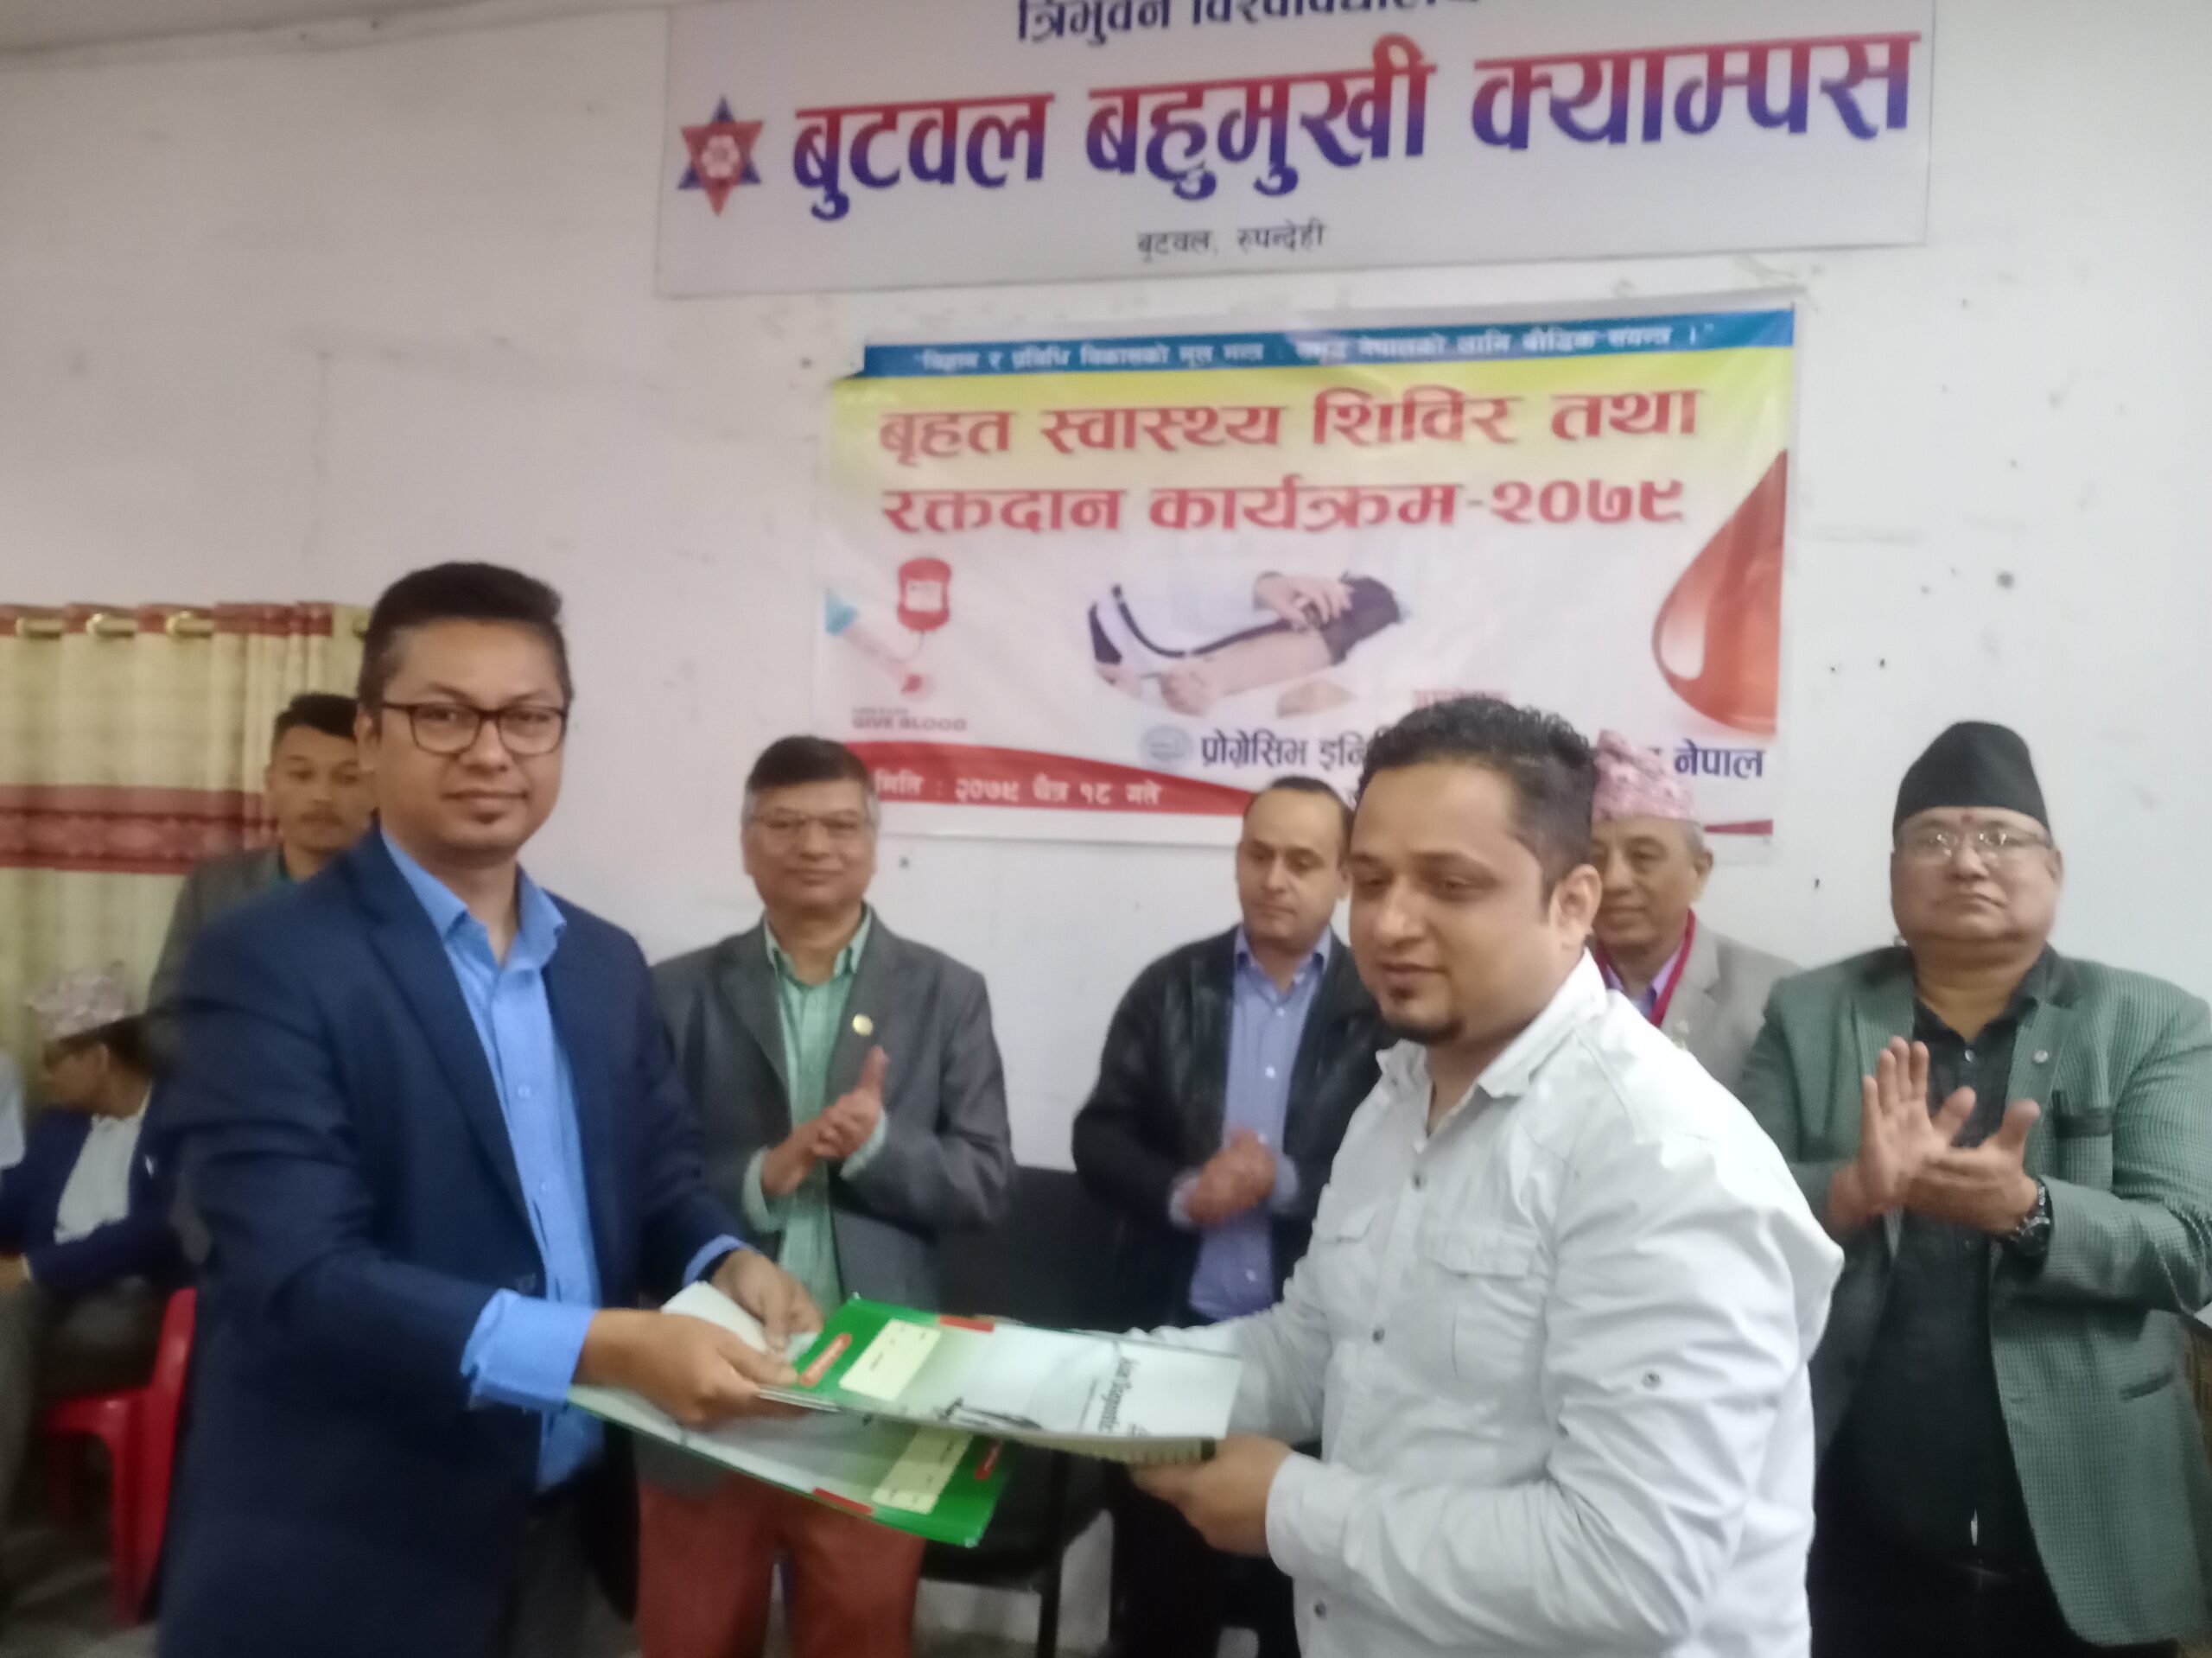 पिन लुम्बिनी र एसियन ल्याब बुटवलबिच इन्जिनियरलाई स्वास्थ्य परिक्षणमा ४० % छुट दिने समझौता